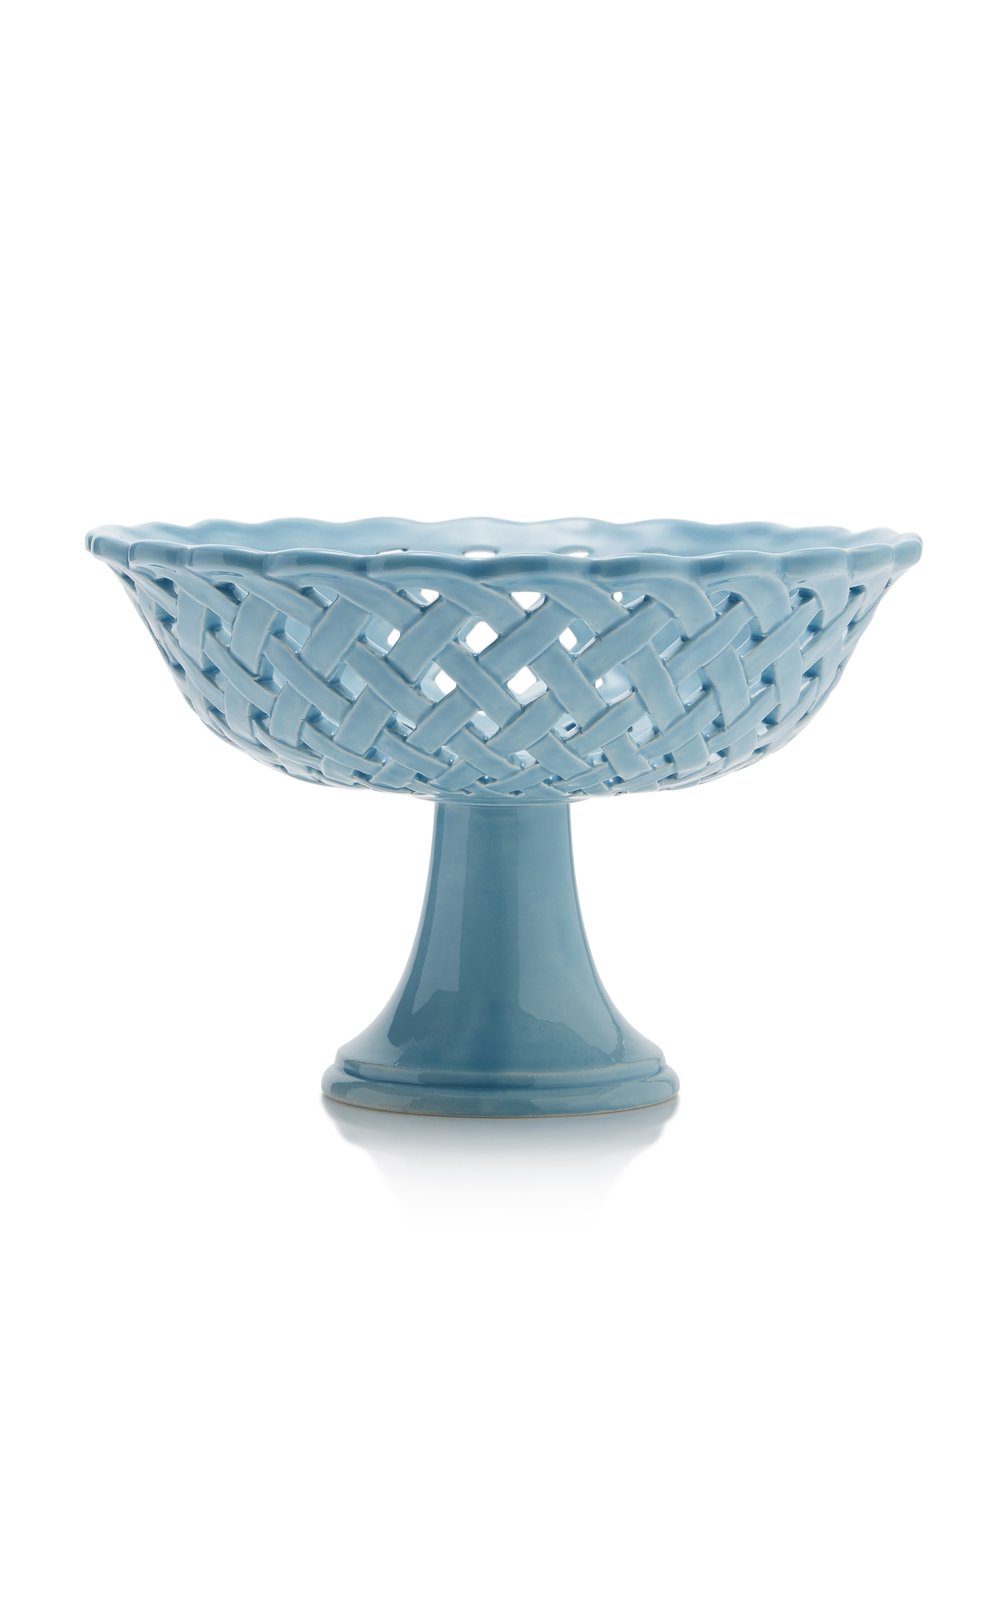 moda-domus-blue-openwork-creamware-compote-bowl-3.jpg